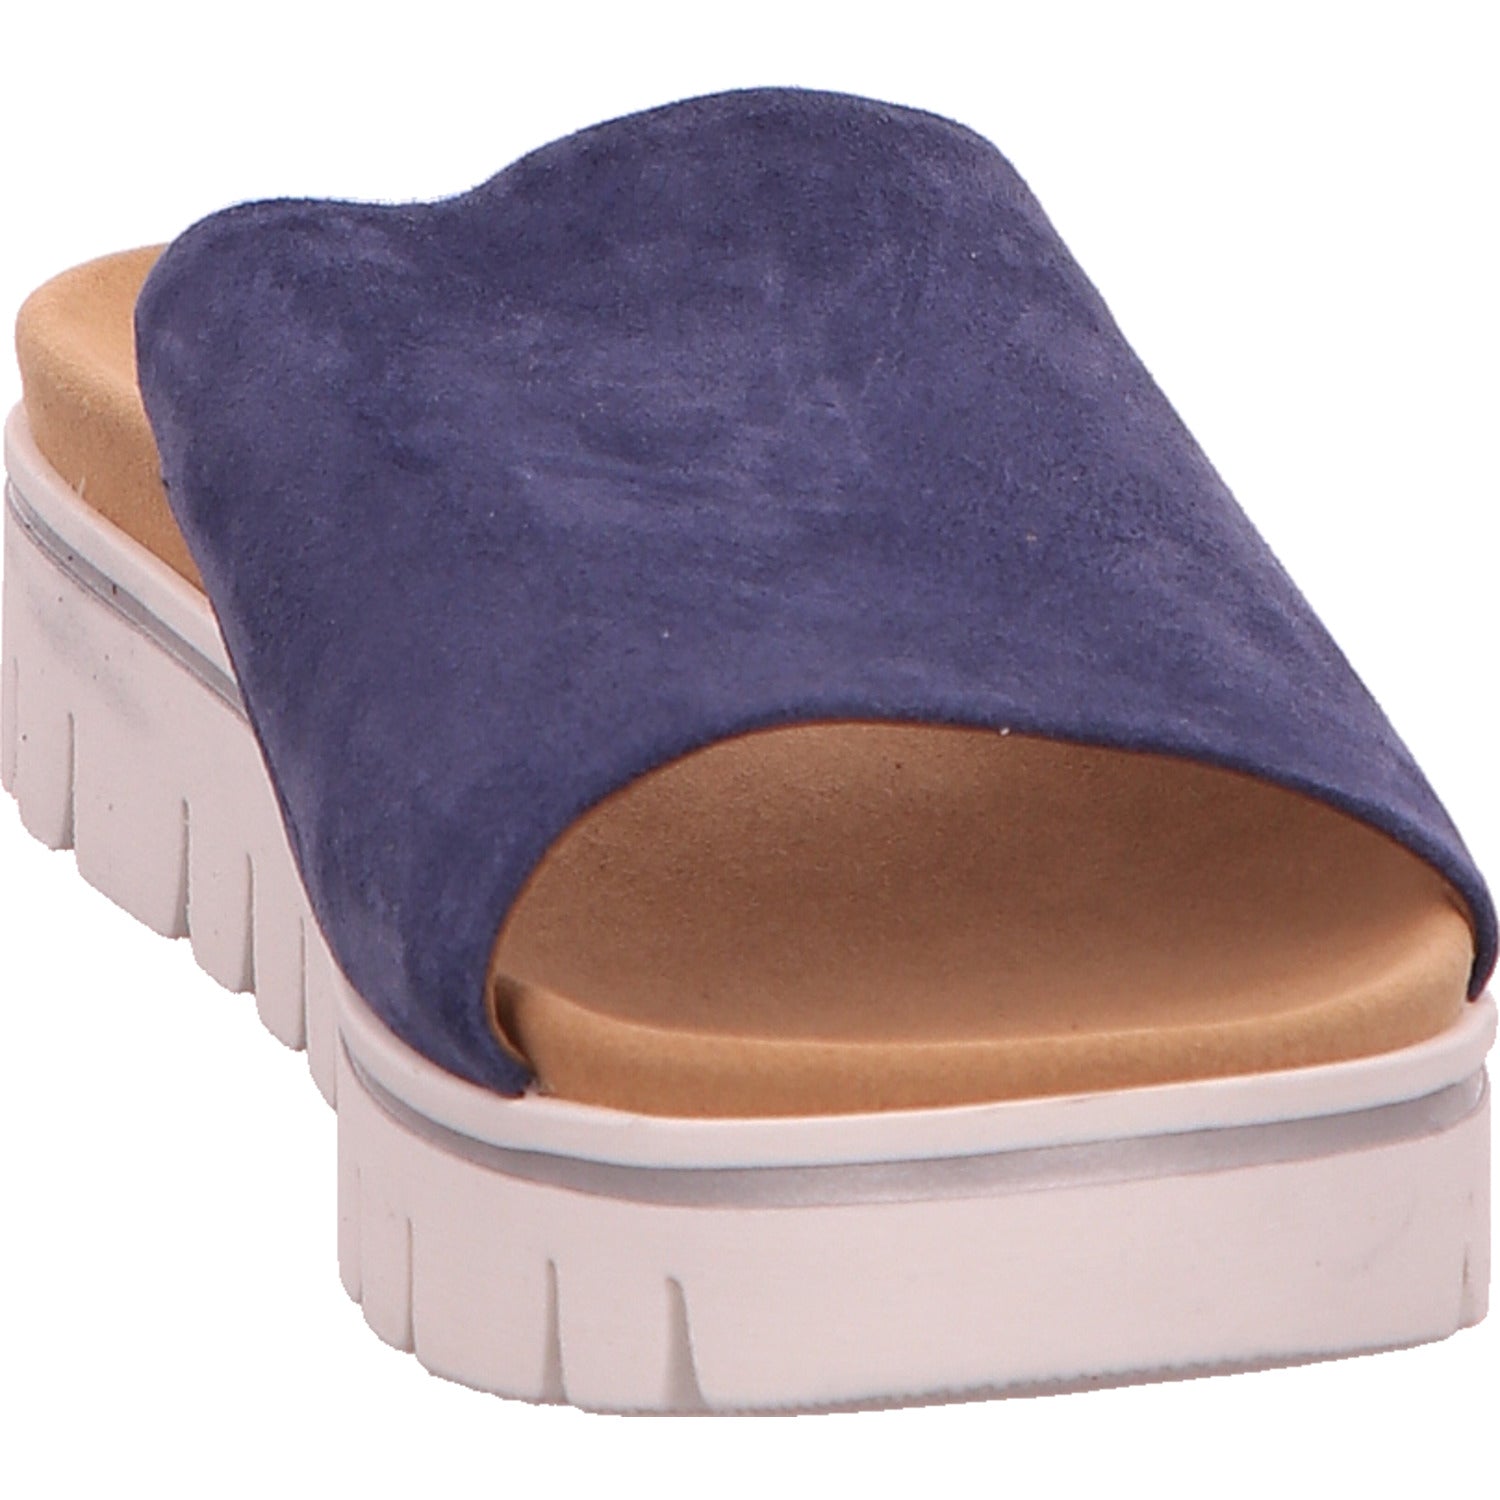 Gabor Comfort Pantolette Sandalette Damen Blau York Leder   Bild6